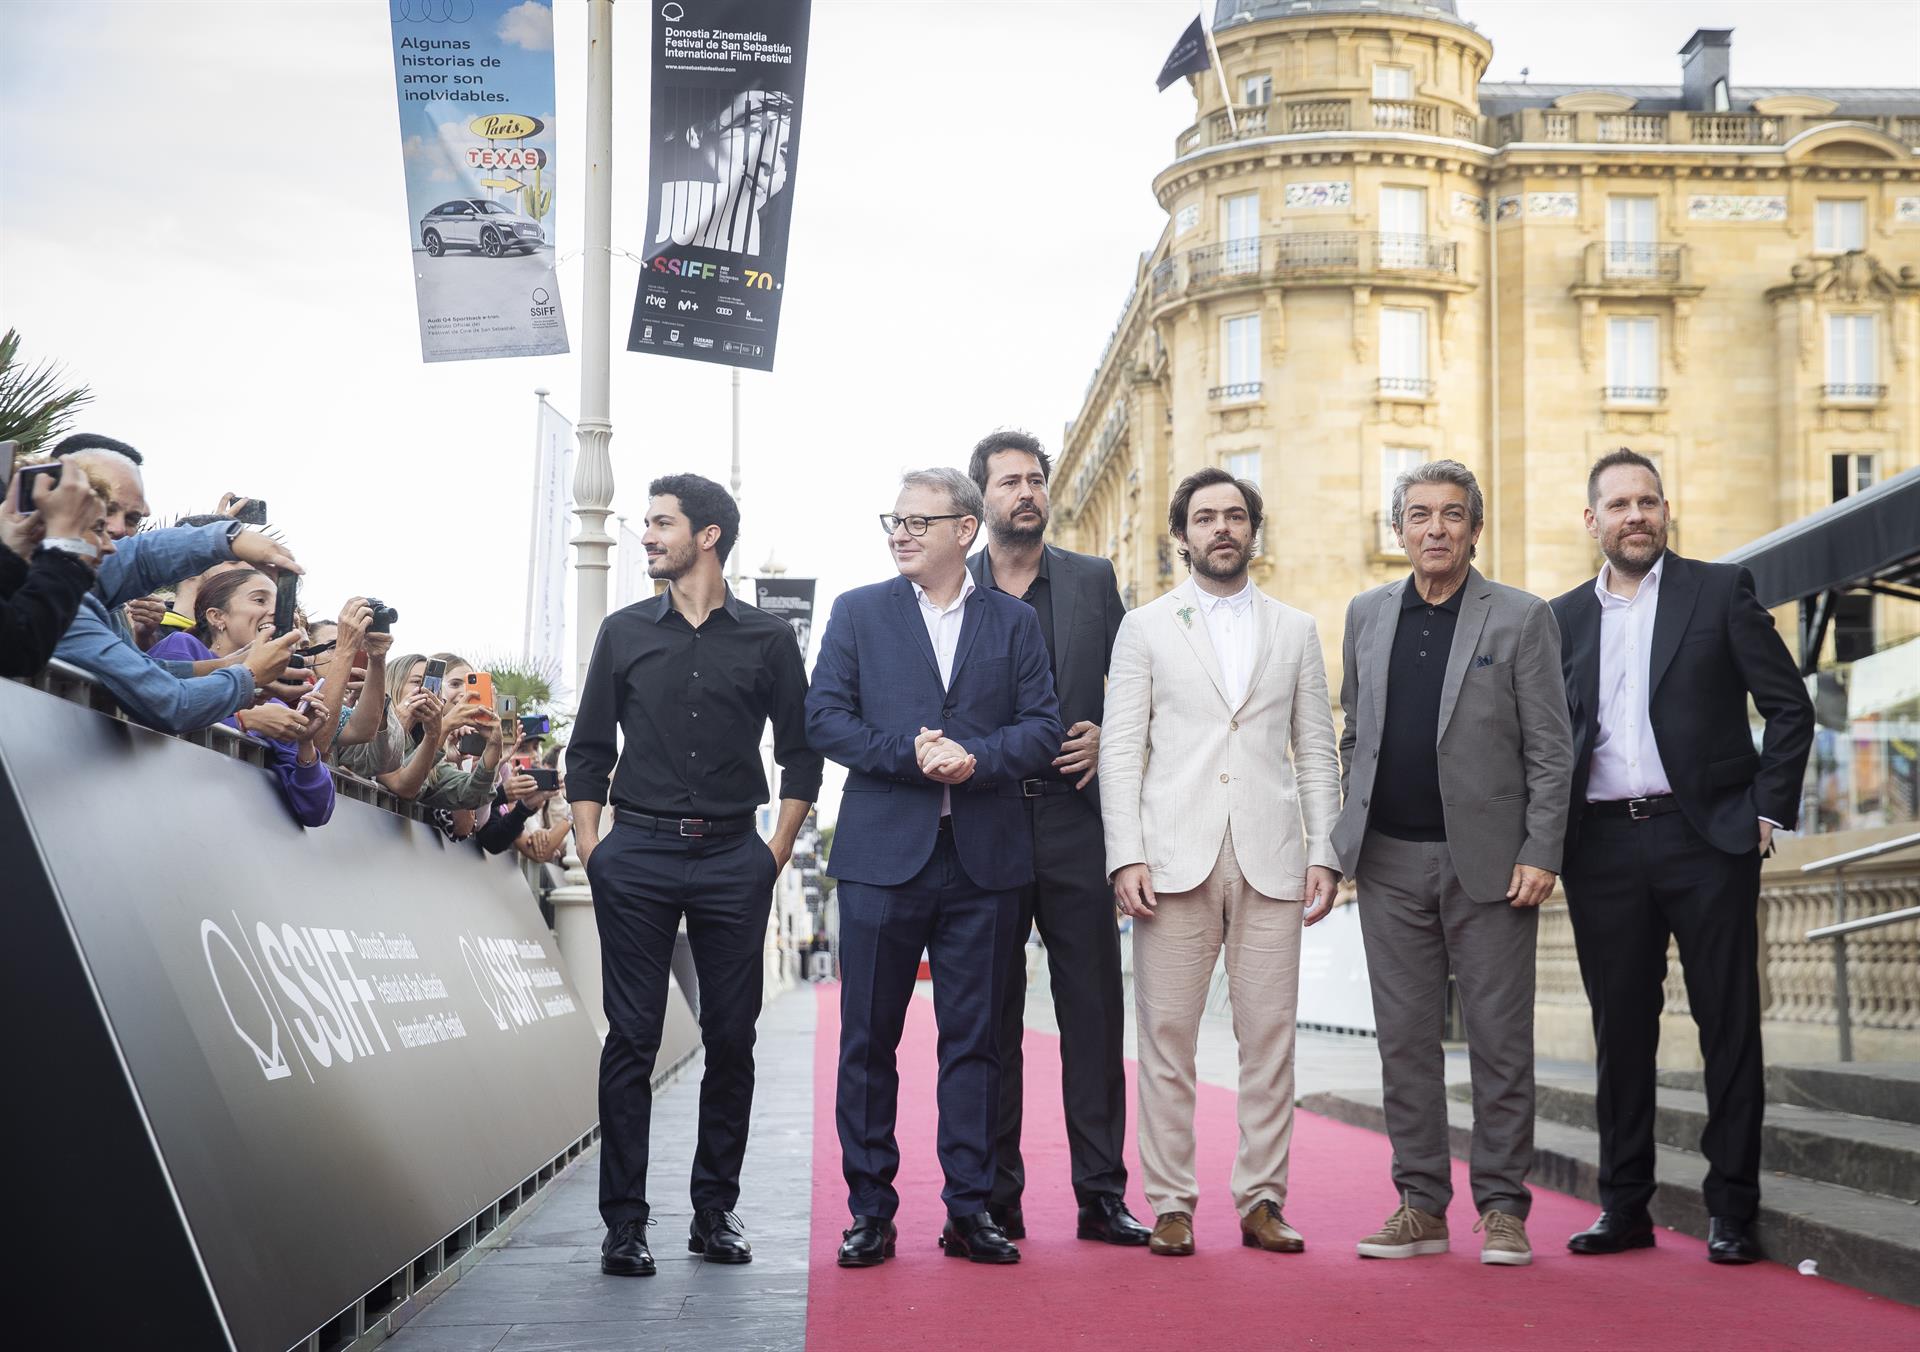 El director Santiago Mitre (3i), los productores Federico Posternak (d) y Axel Kuschevatzky (2i), y los actores Ricardo Darín (2d), Chino Darín (i) y Peter Lanzani (3d), posan en la alfombra roja del Festival de Cine de San Sebastián, donde presentaron su película "Argentina, 1985". EFE/ Javier Etxezarreta